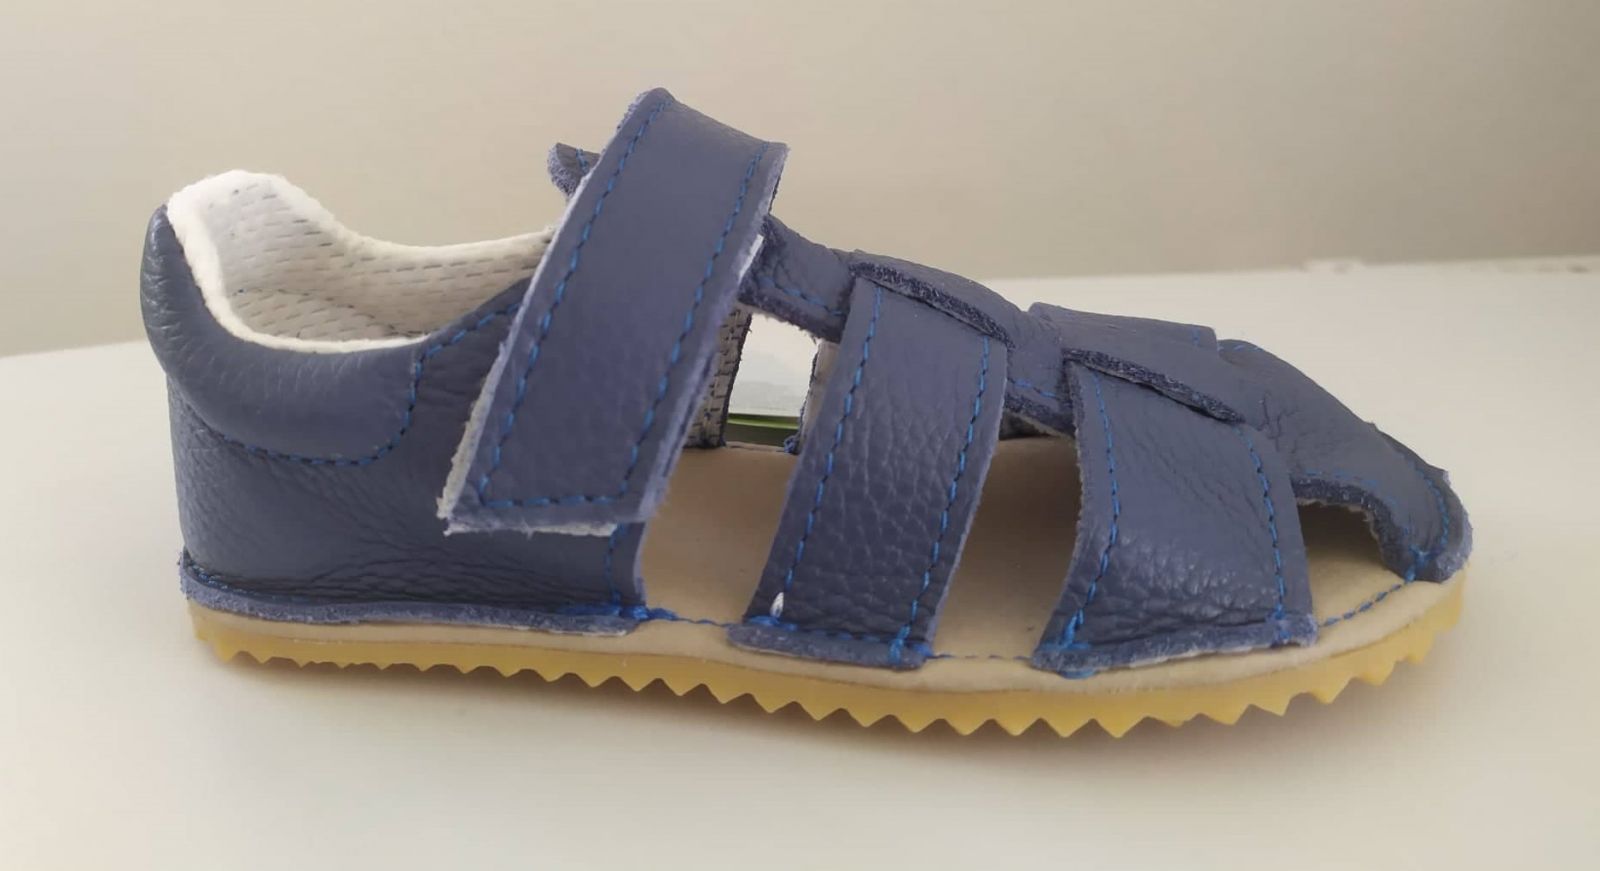 Barefoot Jonap barefoot sandals Zula blue